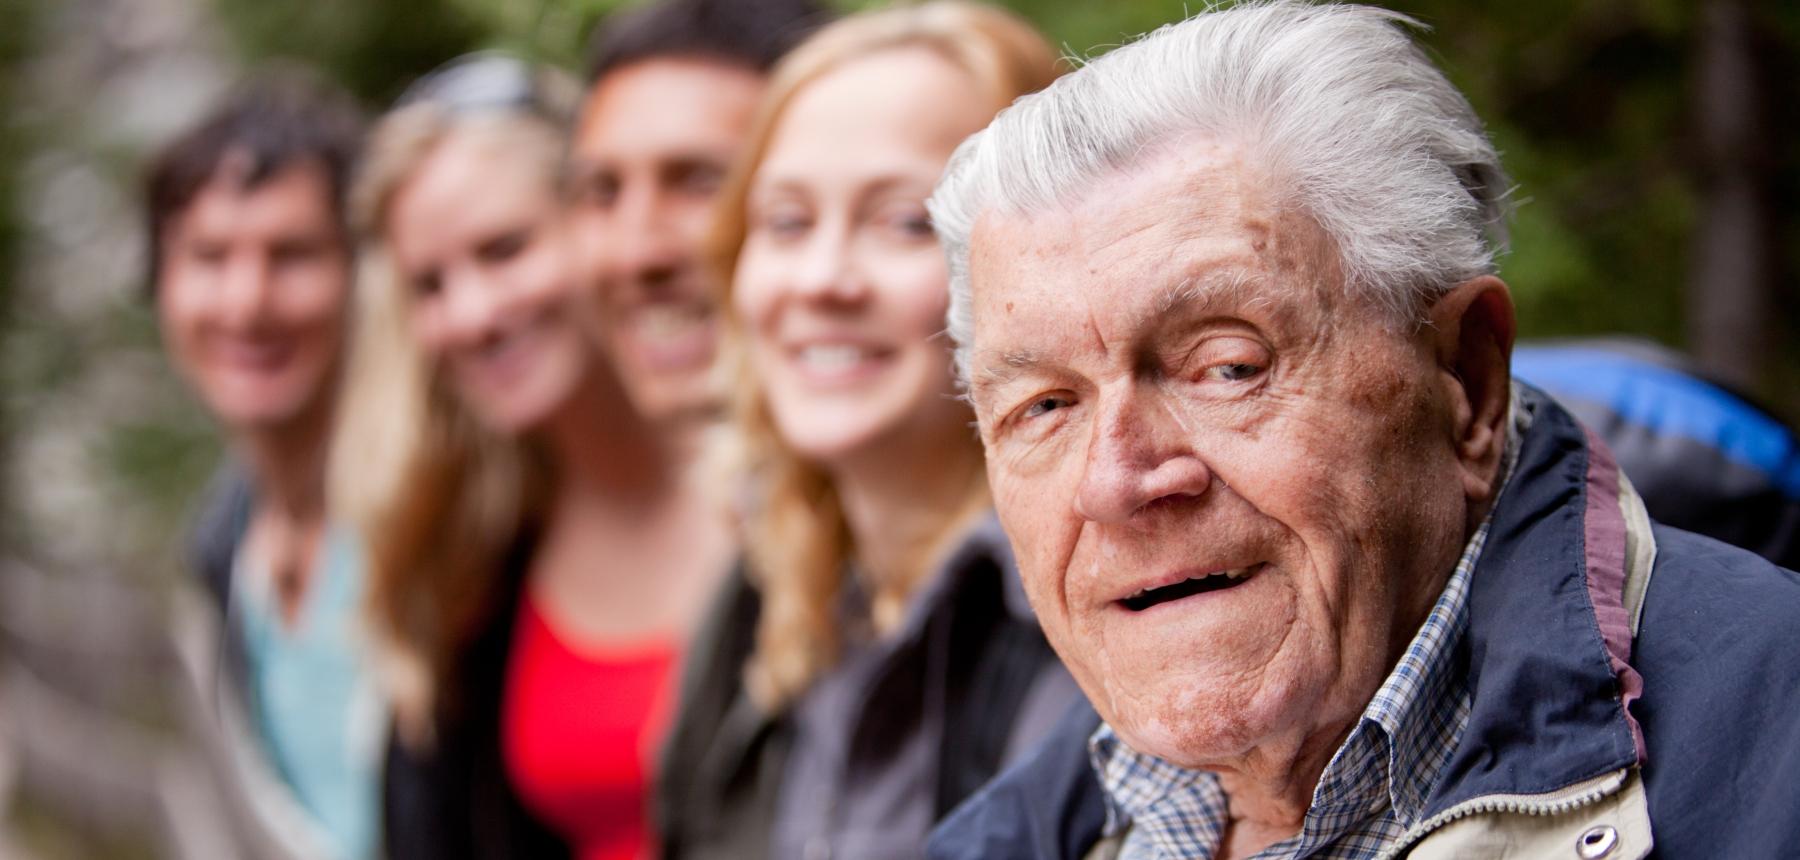 Äldre man och i bakgrunden andra personer i varierande åldrar.